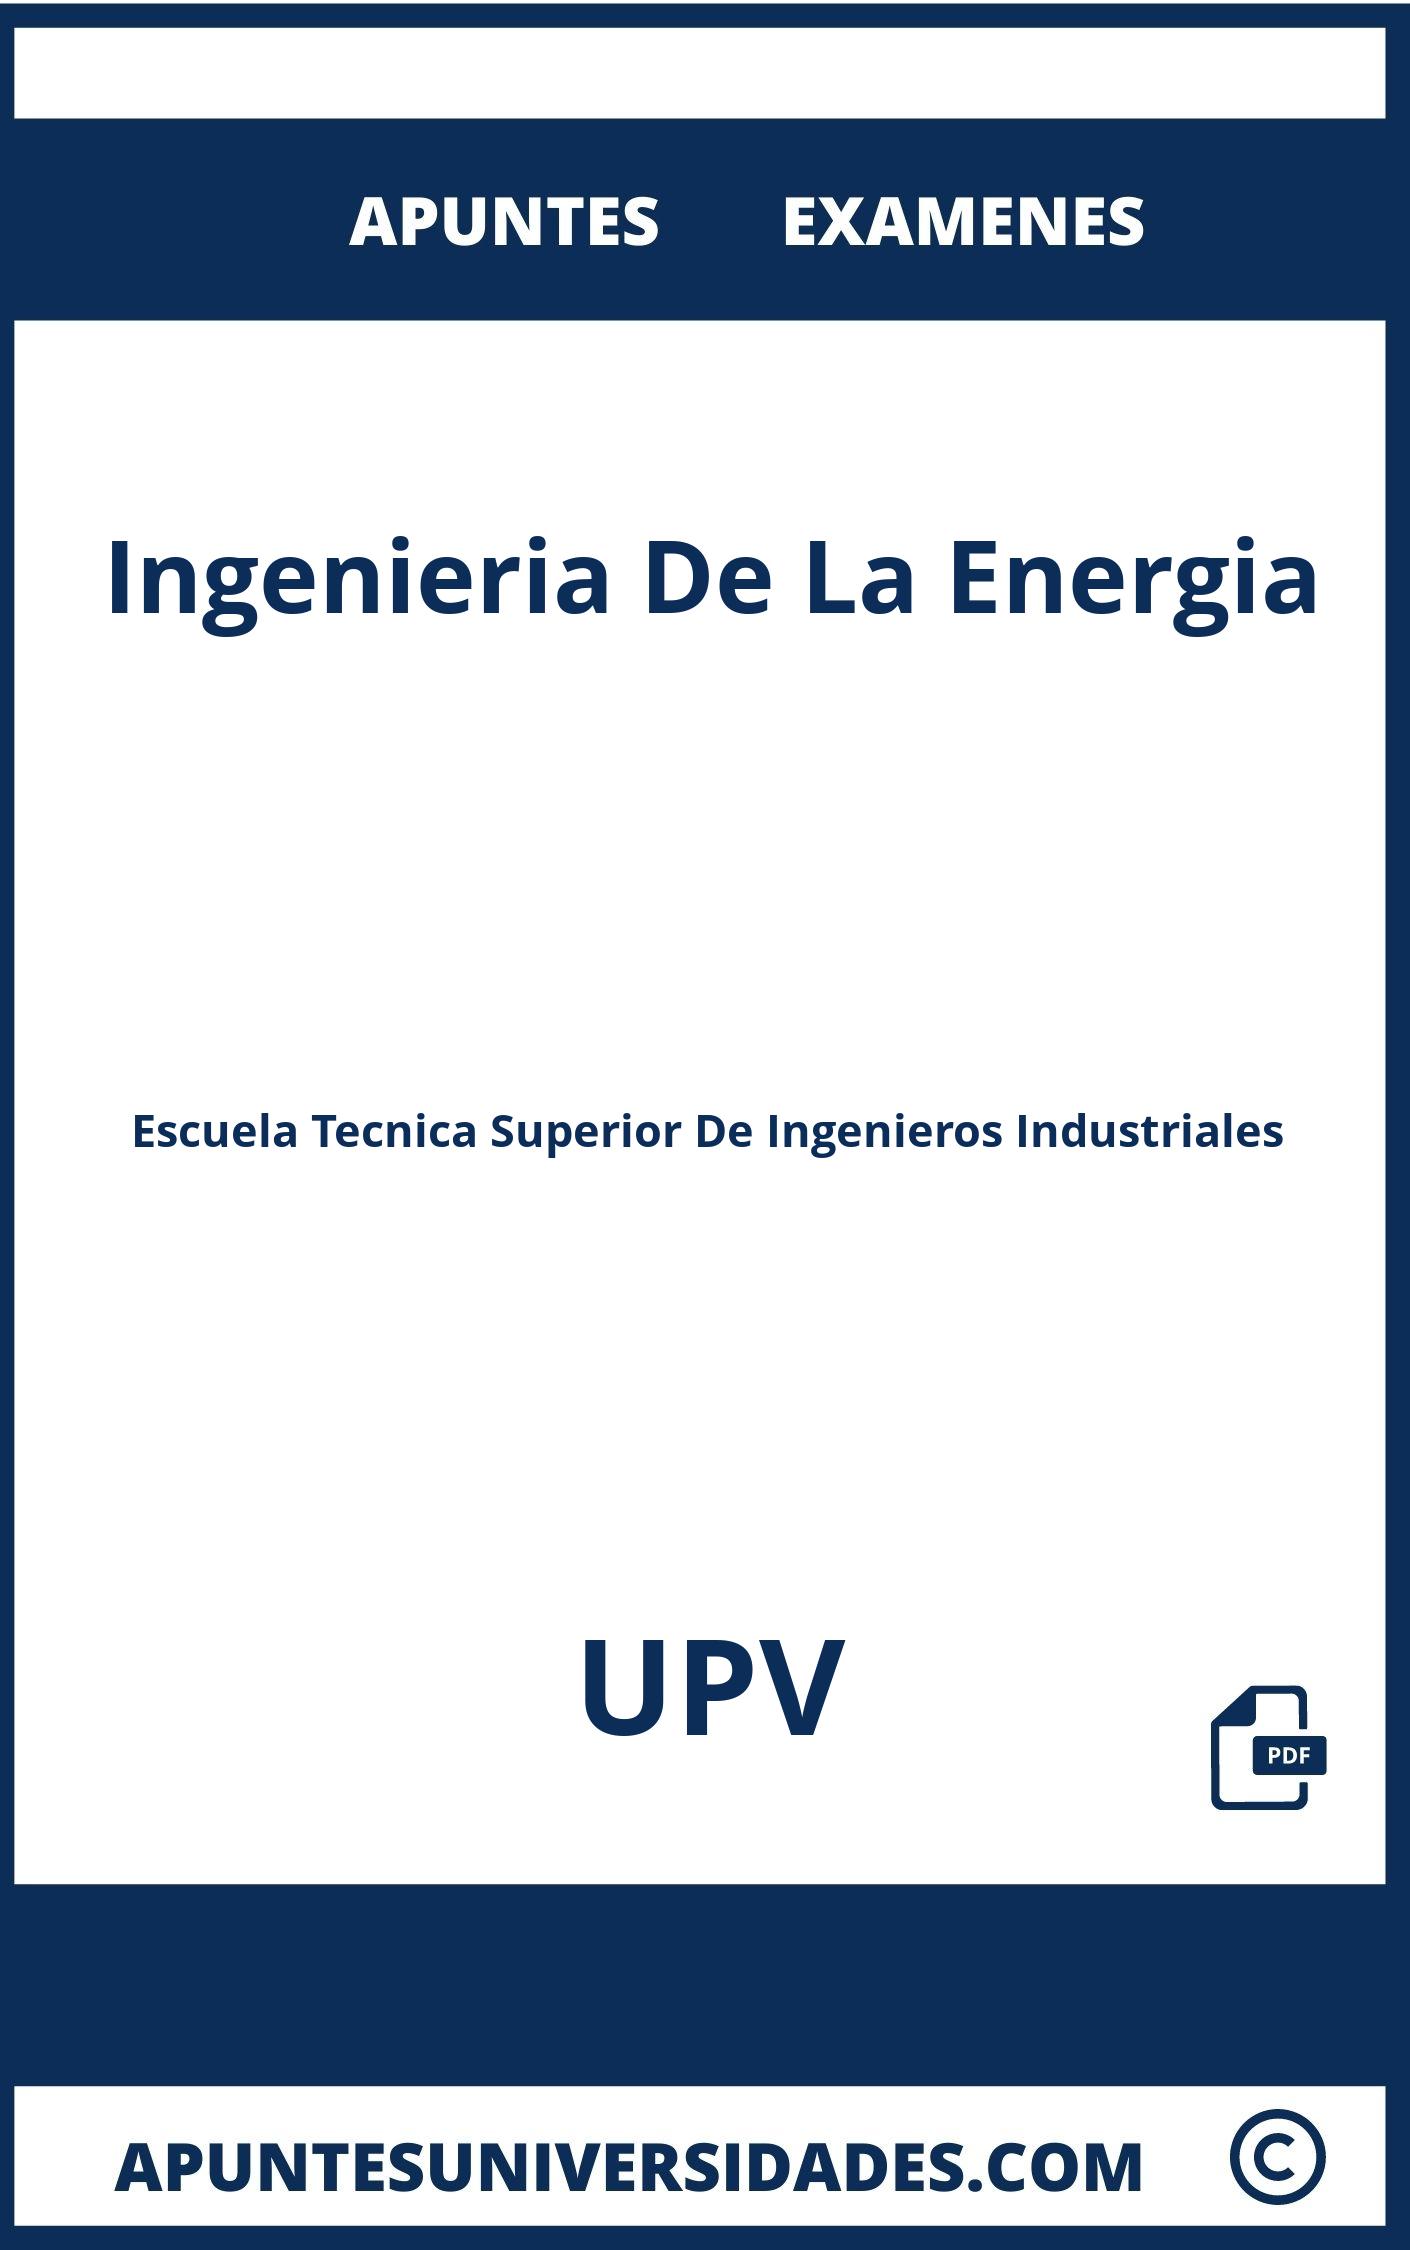 Apuntes y Examenes Ingenieria De La Energia UPV